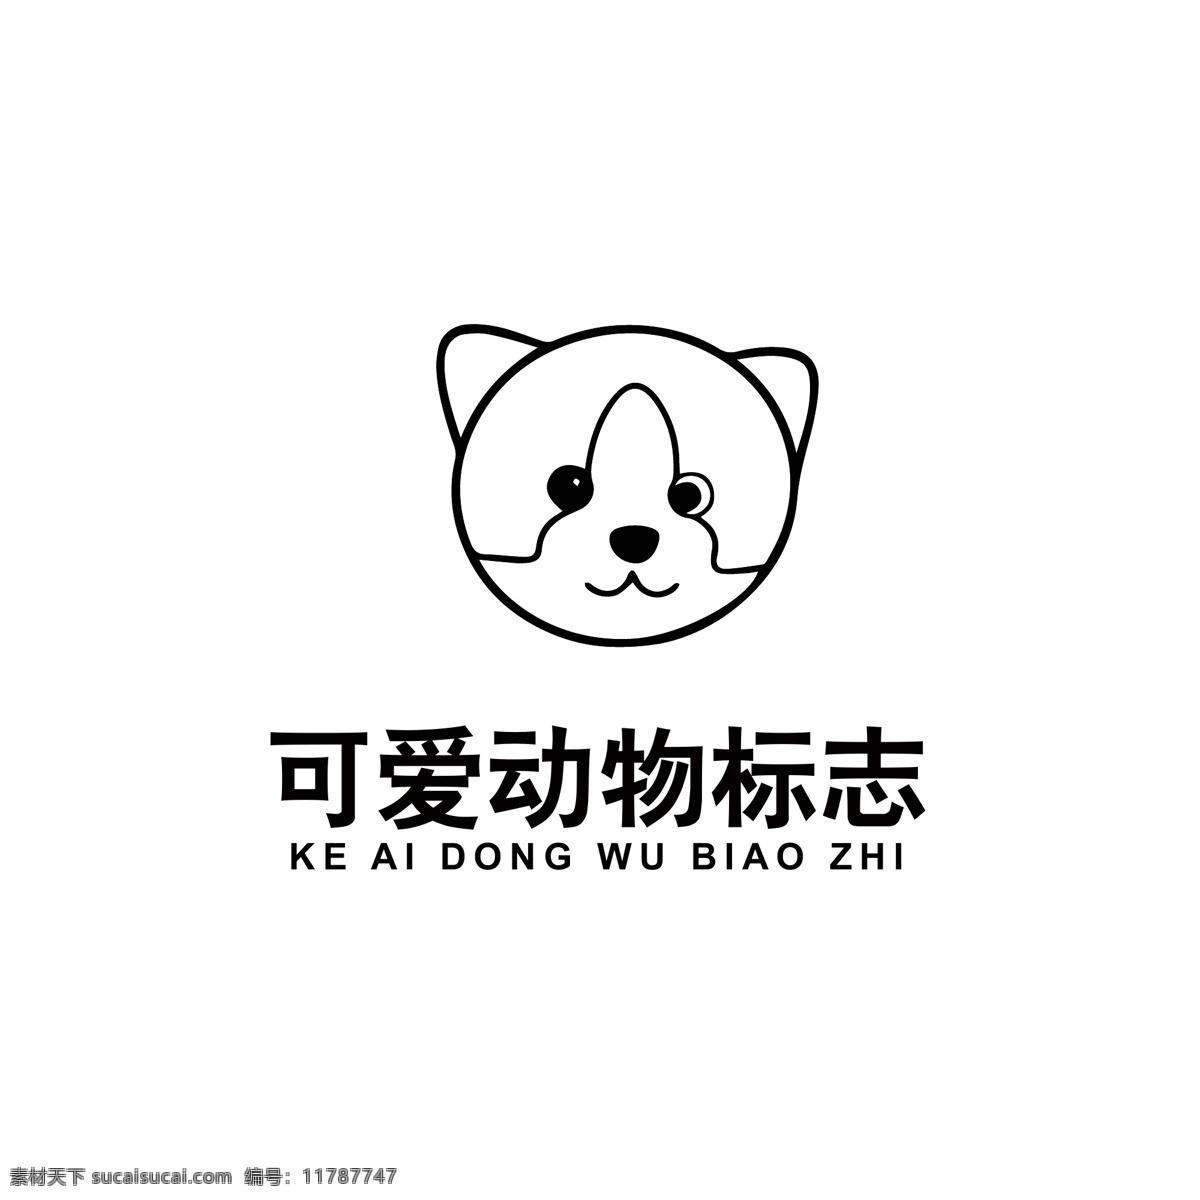 可爱 动物 logo 动物logo 小狗logo 小狗头像 卡通动物 可爱小狗 品牌logo 简笔logo 通用logo logo设计 标识 标志 ai矢量